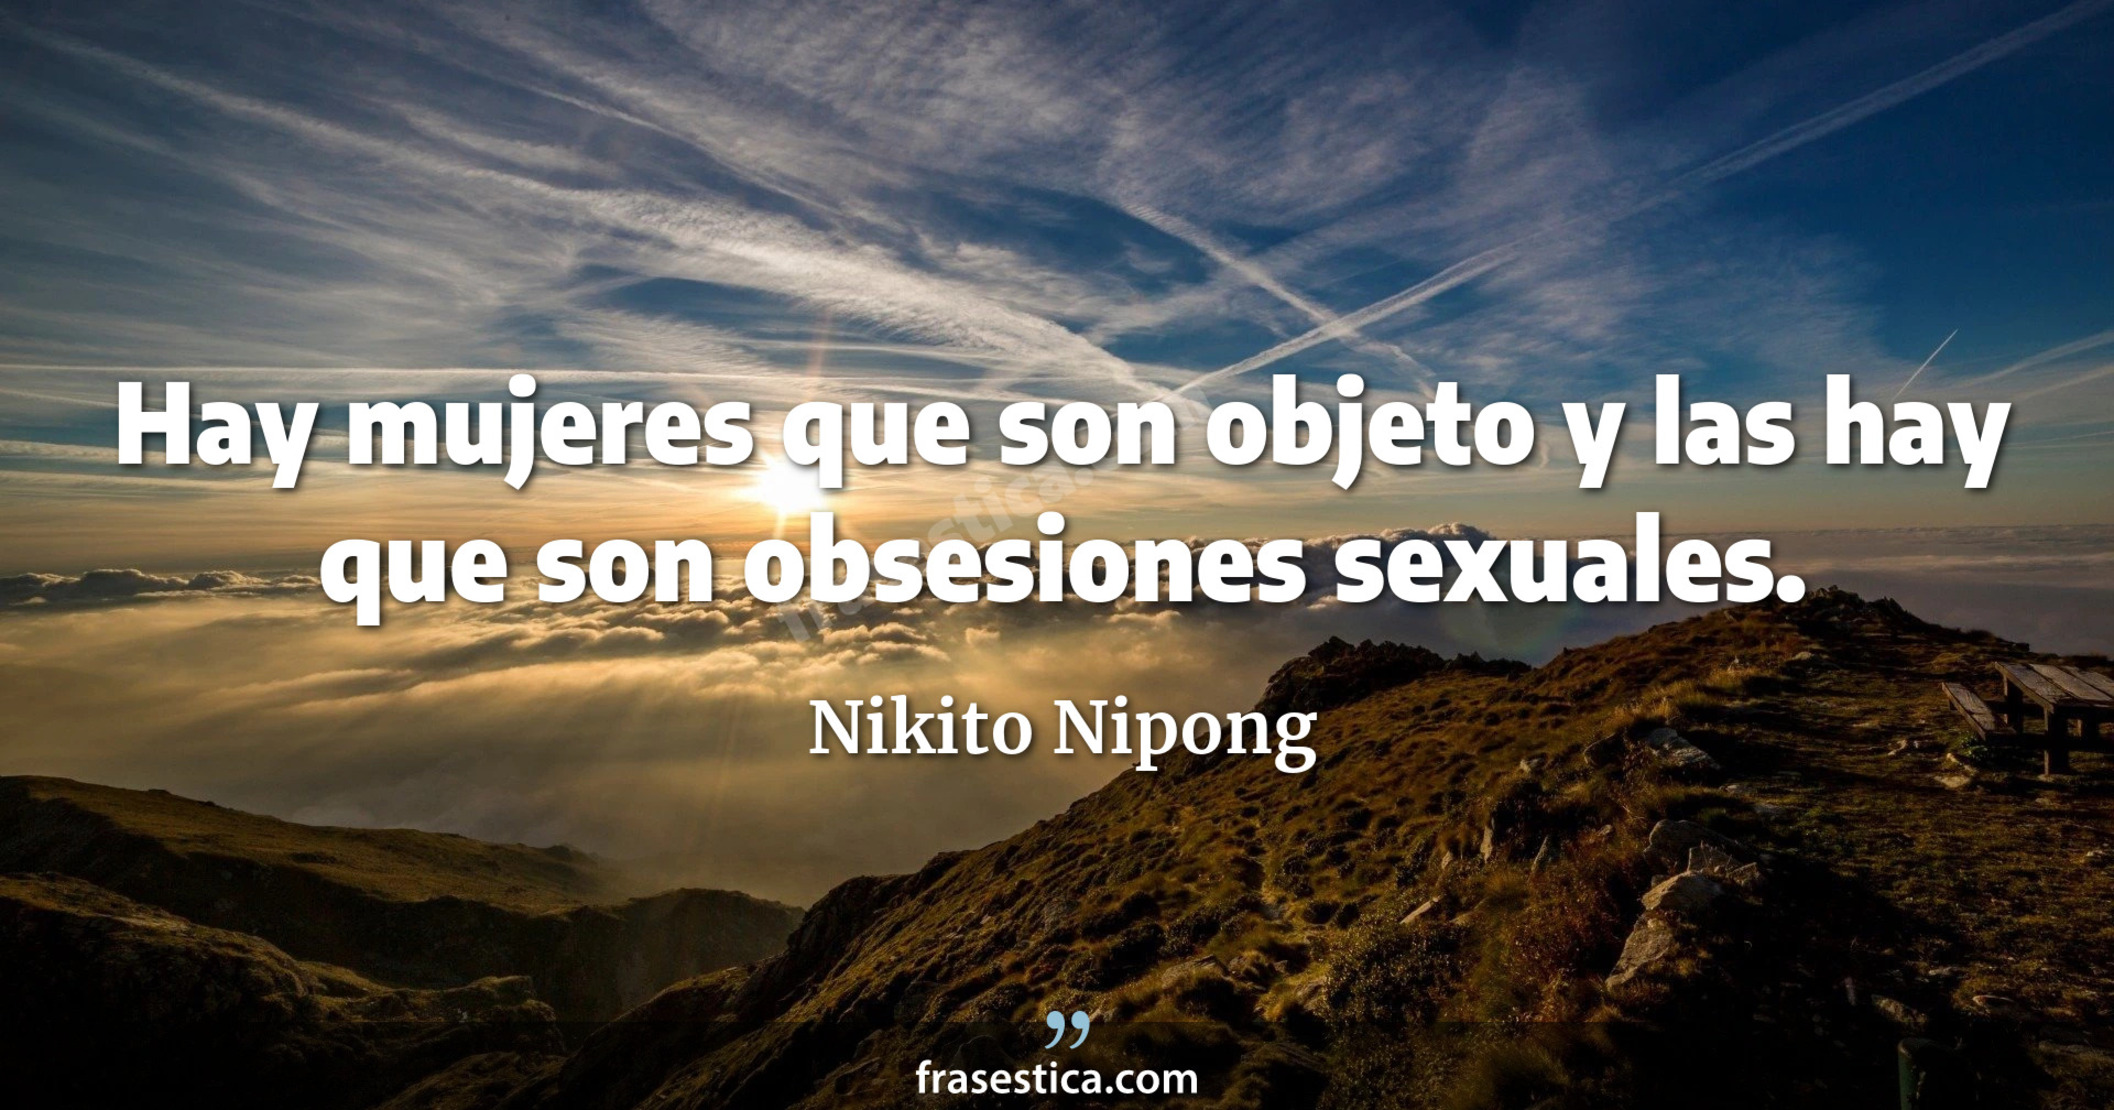 Hay mujeres que son objeto y las hay que son obsesiones sexuales. - Nikito Nipong